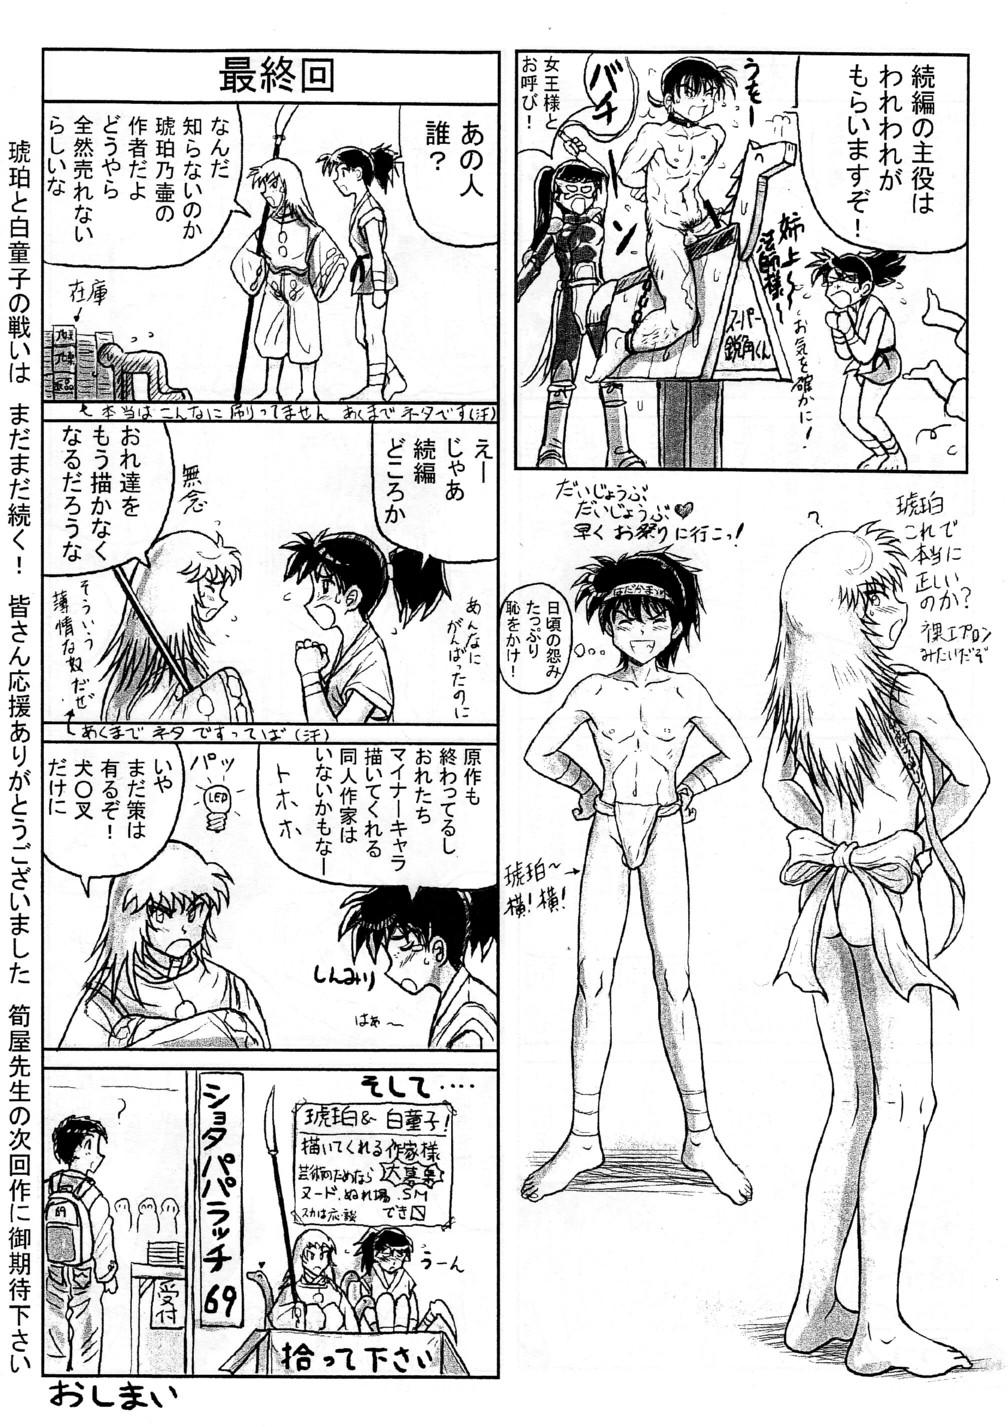 Takenokoya - Kohaku no Tsubo Manga Ban 9